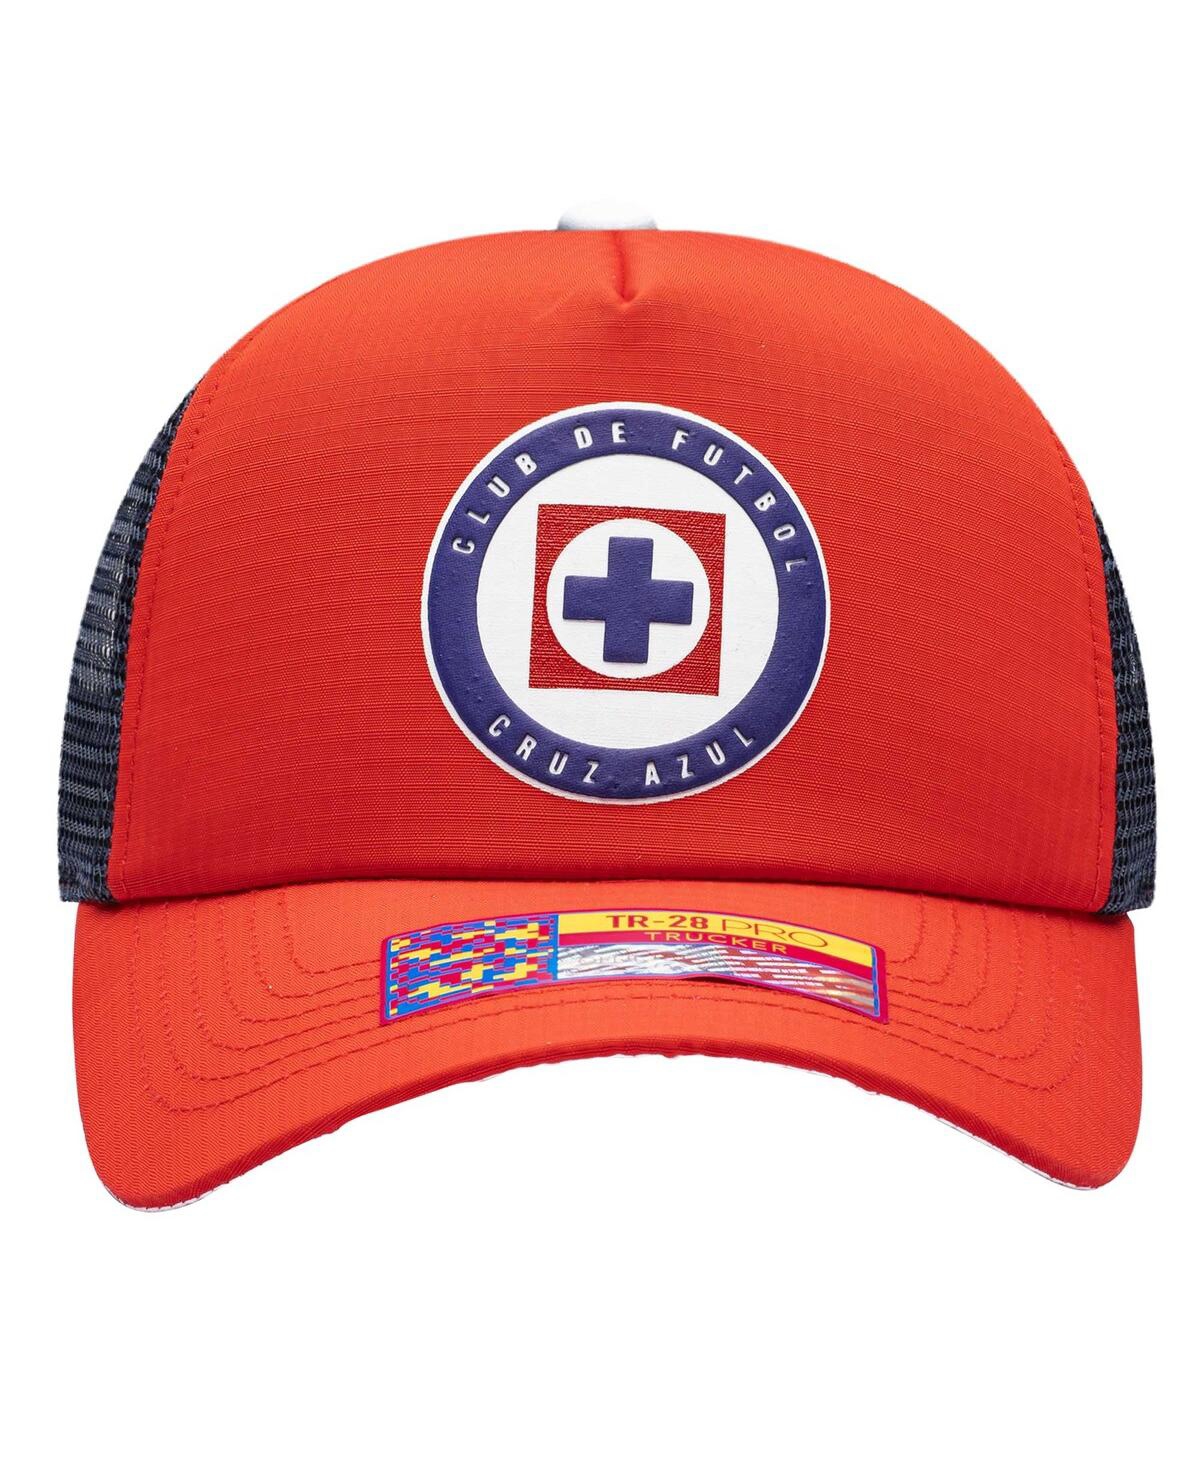 Shop Fan Ink Men's Red Cruz Azul Trucker Adjustable Hat